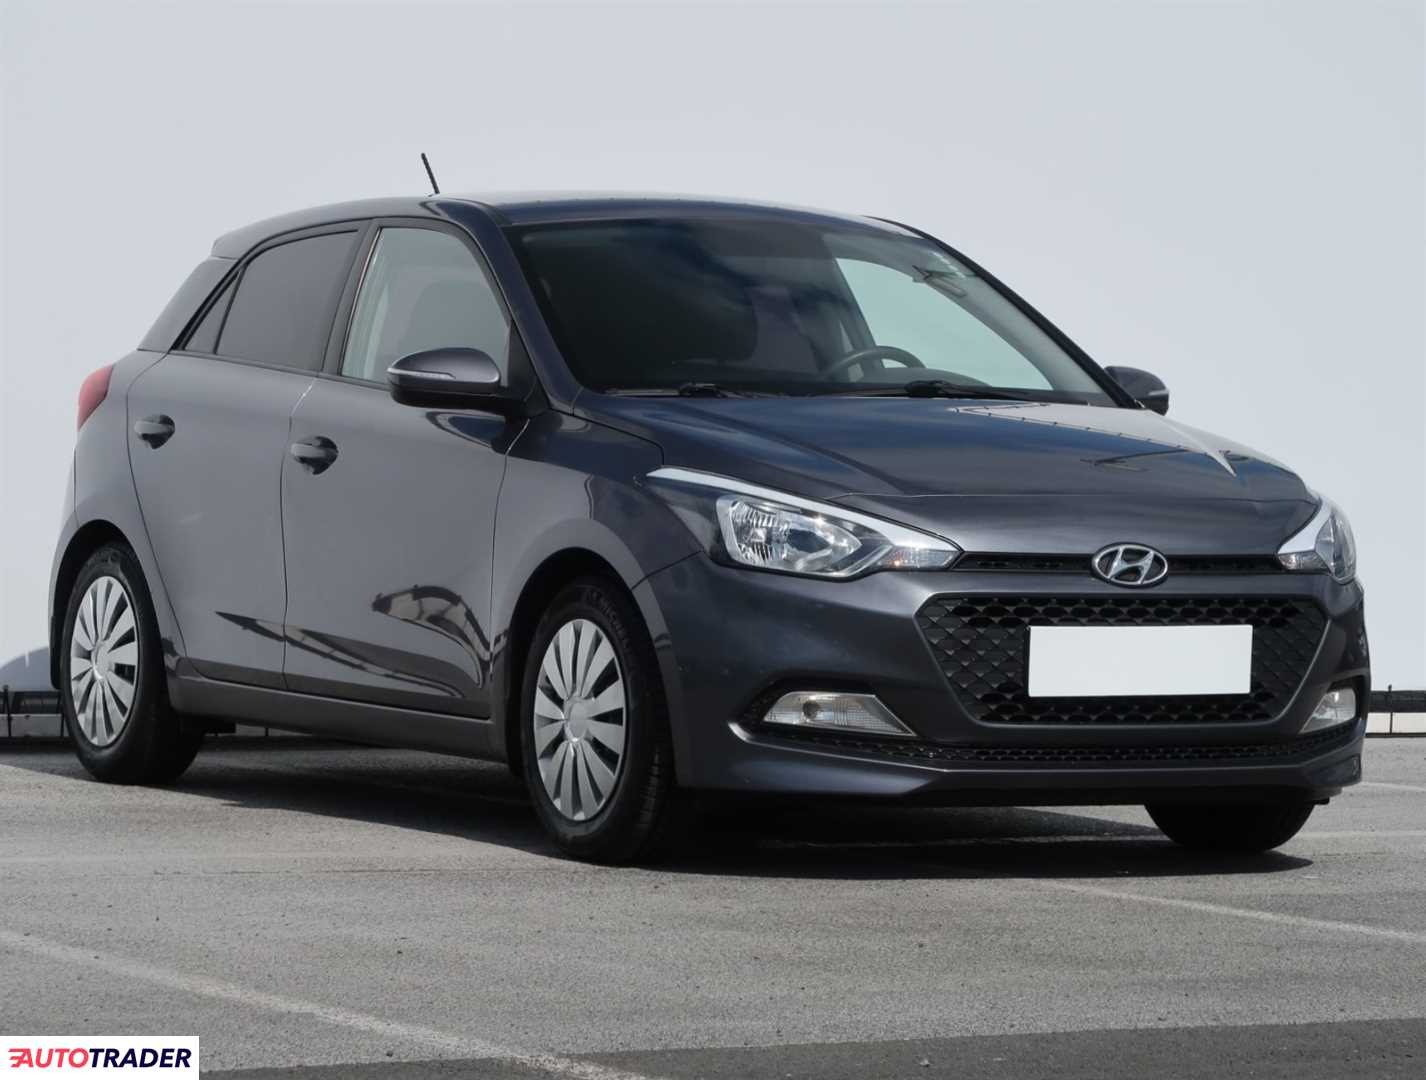 Hyundai i20 2016 1.2 83 KM